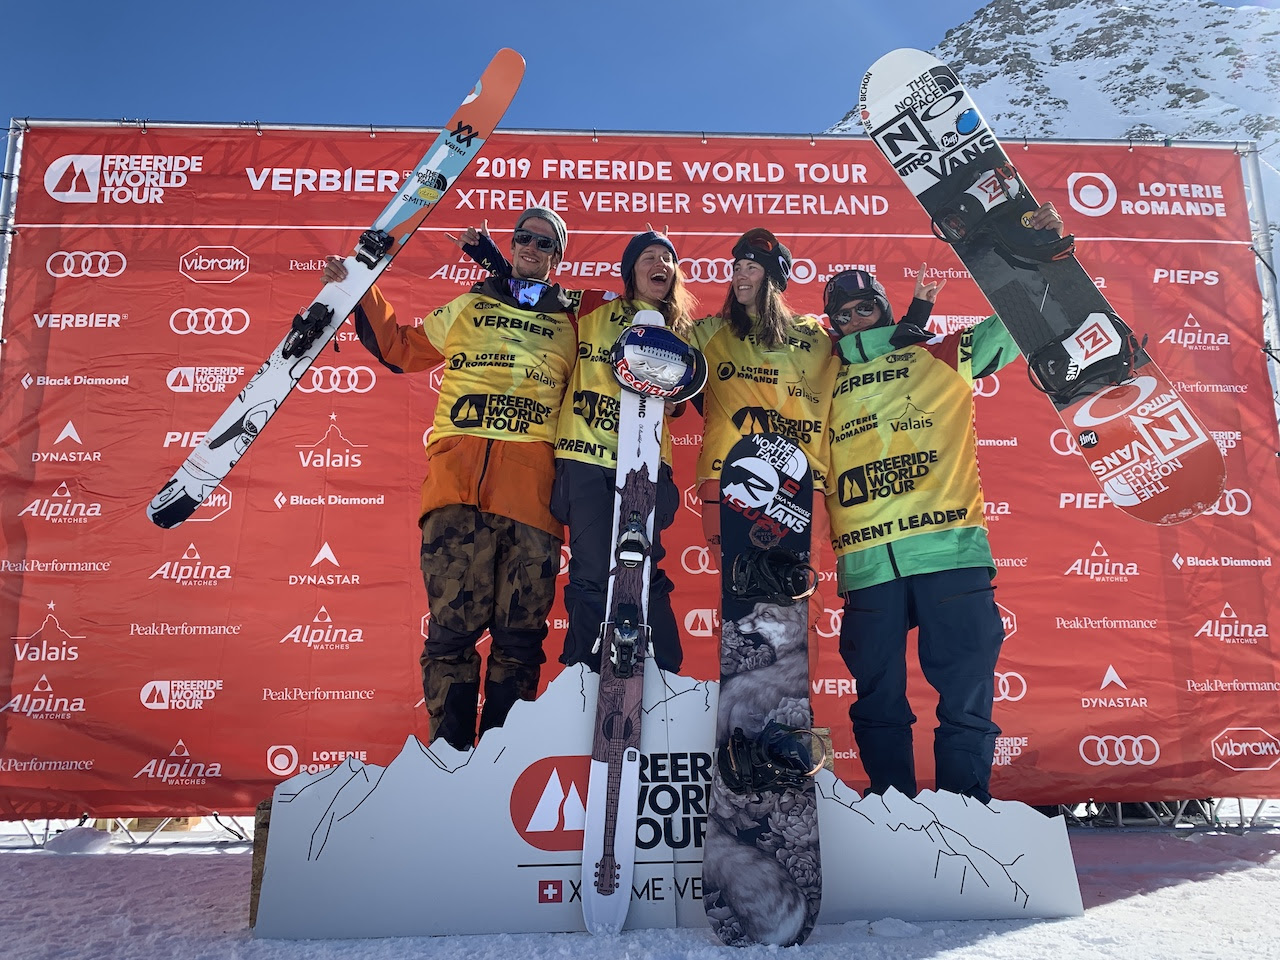 Italianos y franceses, campeones del mundo en esquí y snowboard del Freeride World Tour 2019